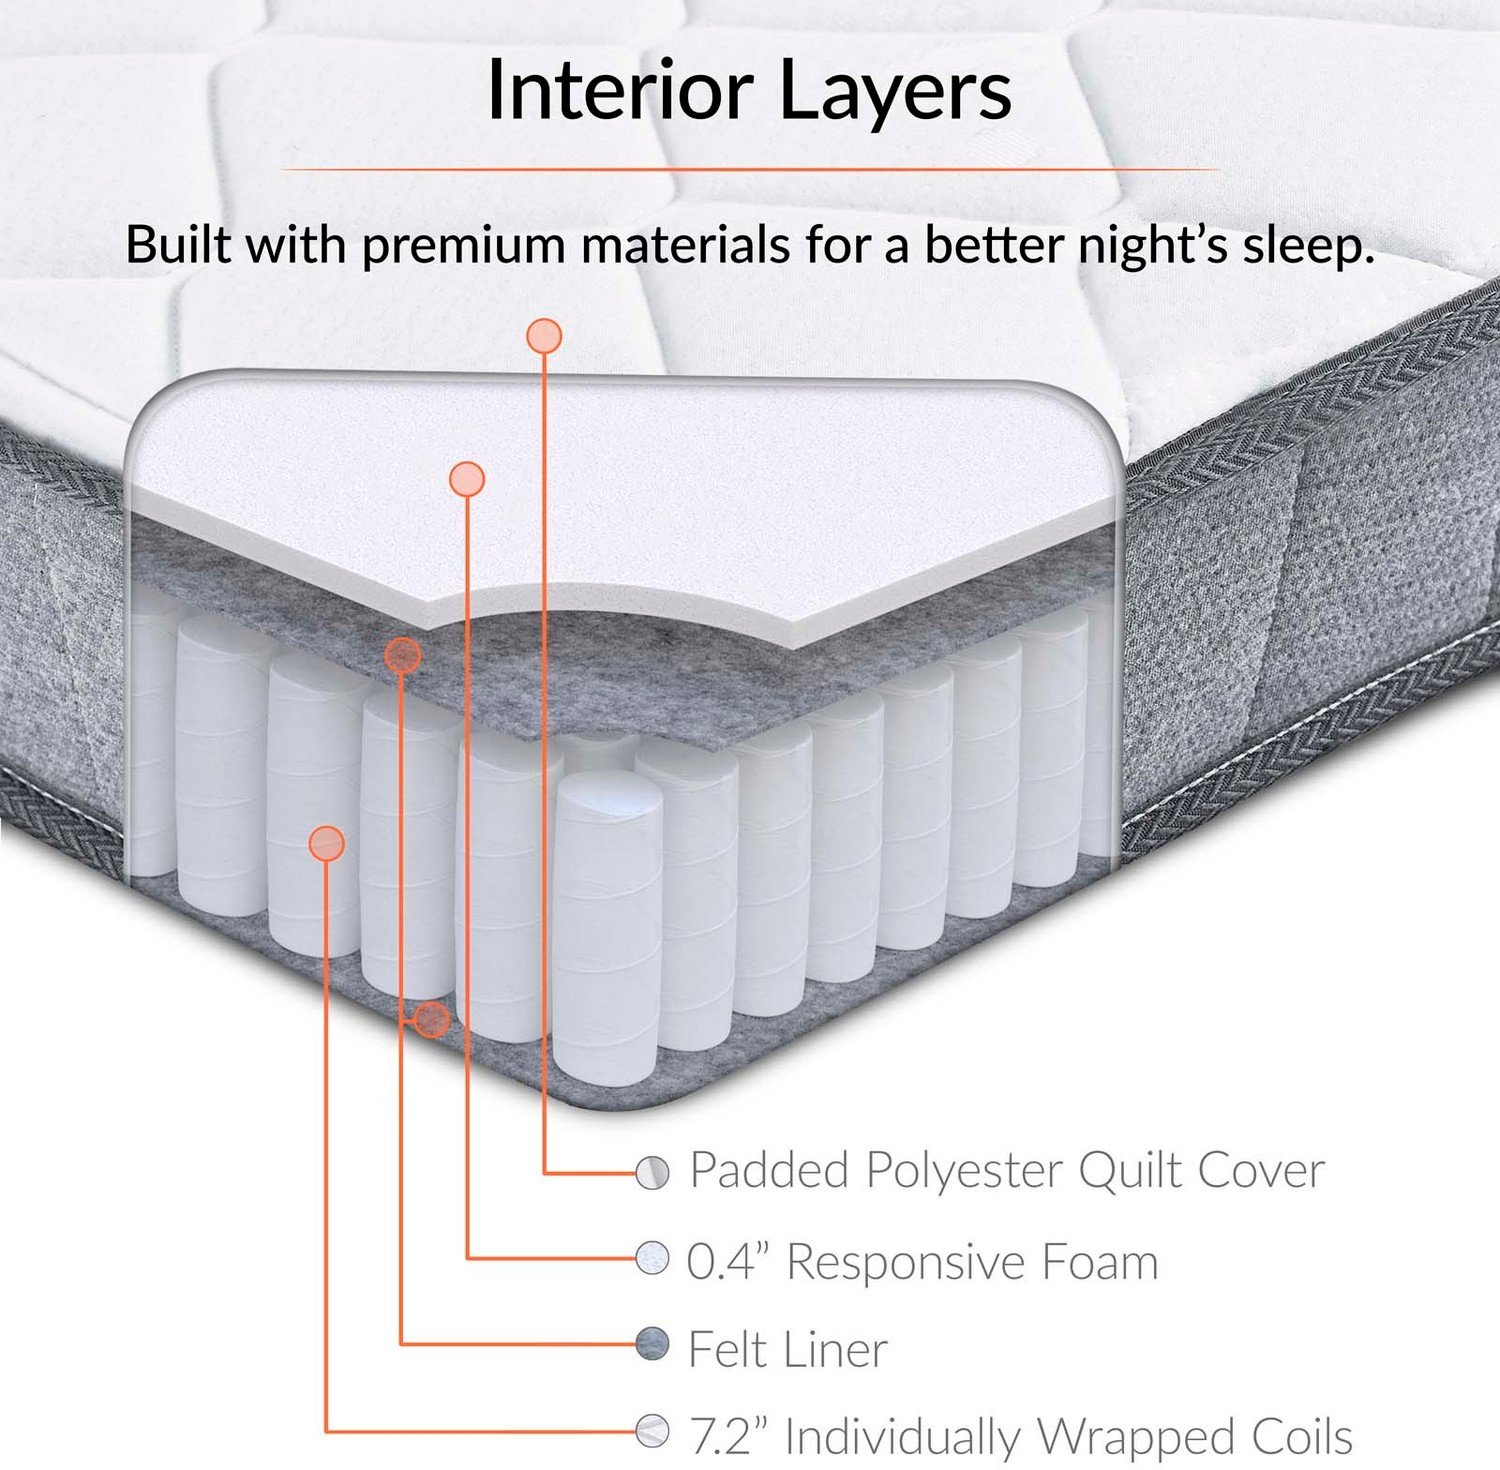 8 firm memory foam mattress Modway Furniture Queen Mattresses